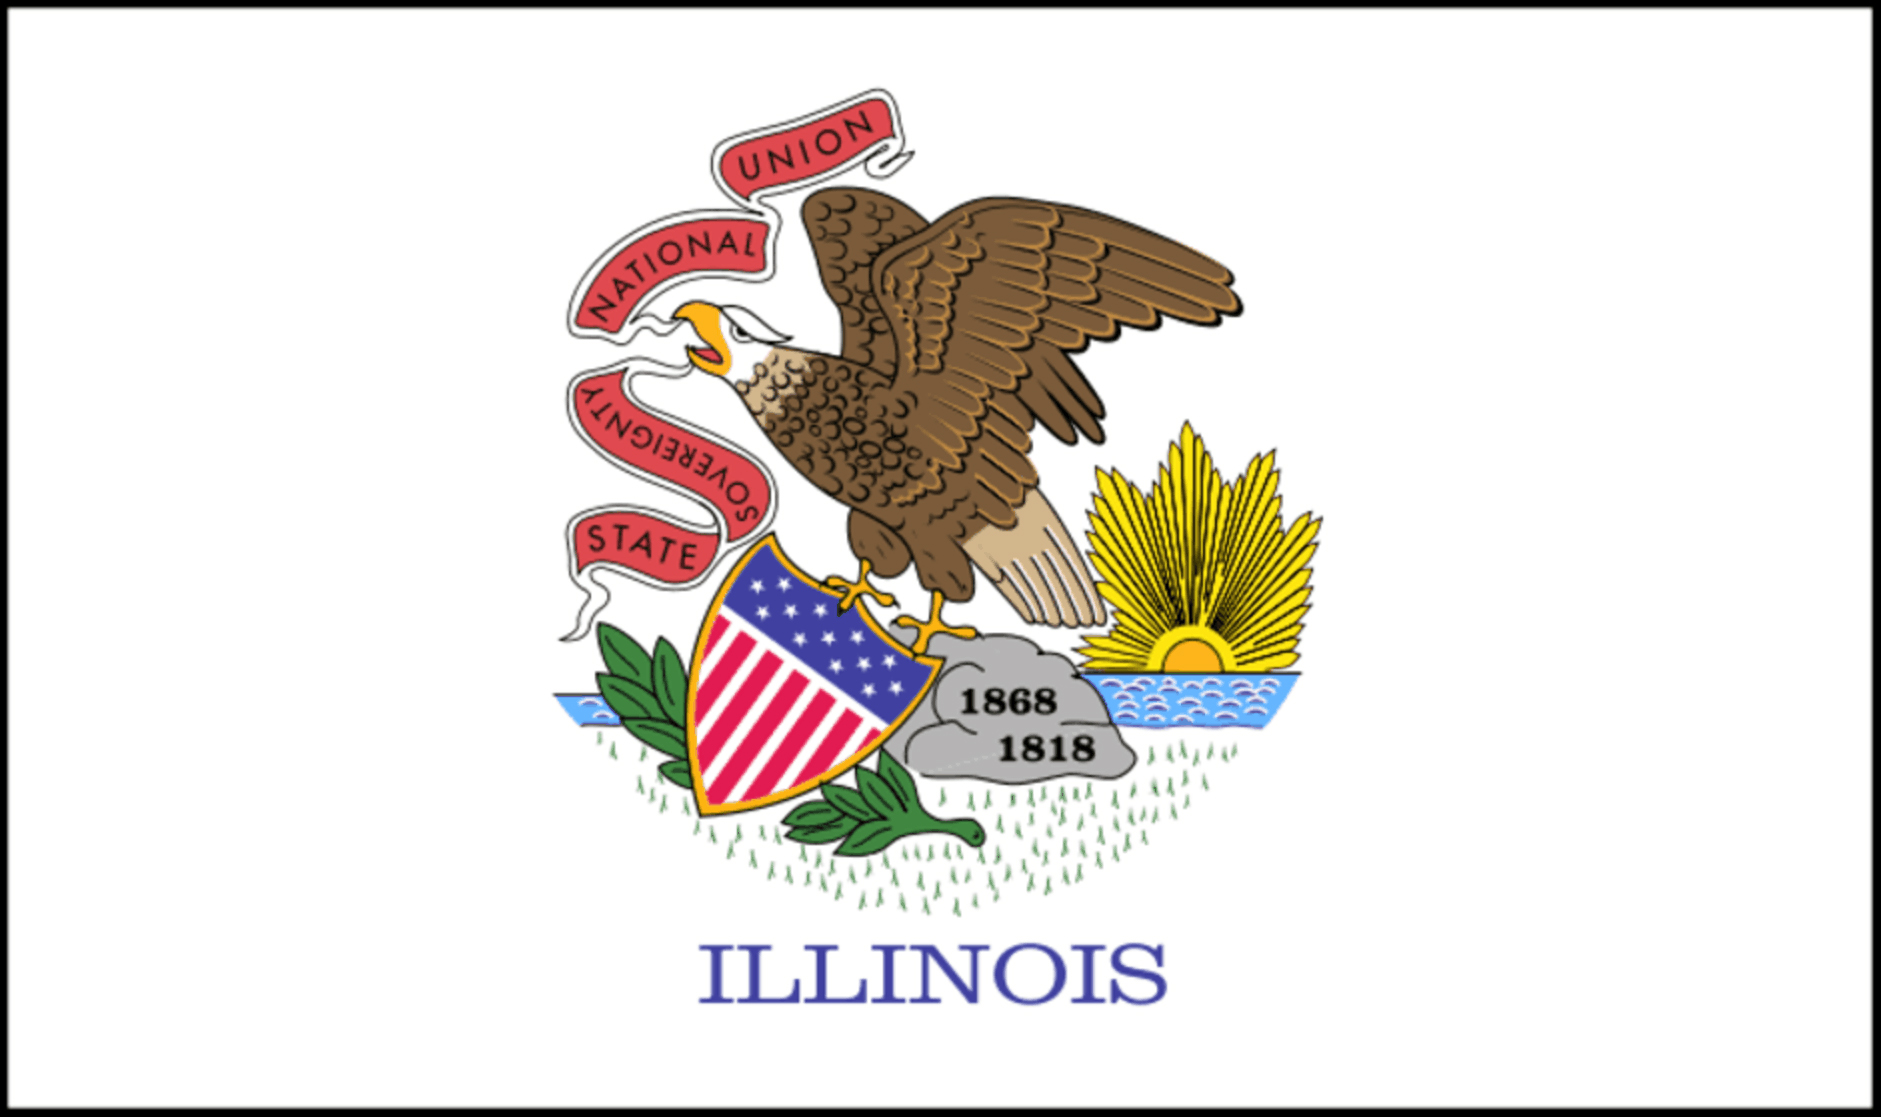 Steagul de stat - Illinois - Fabrica de steaguri